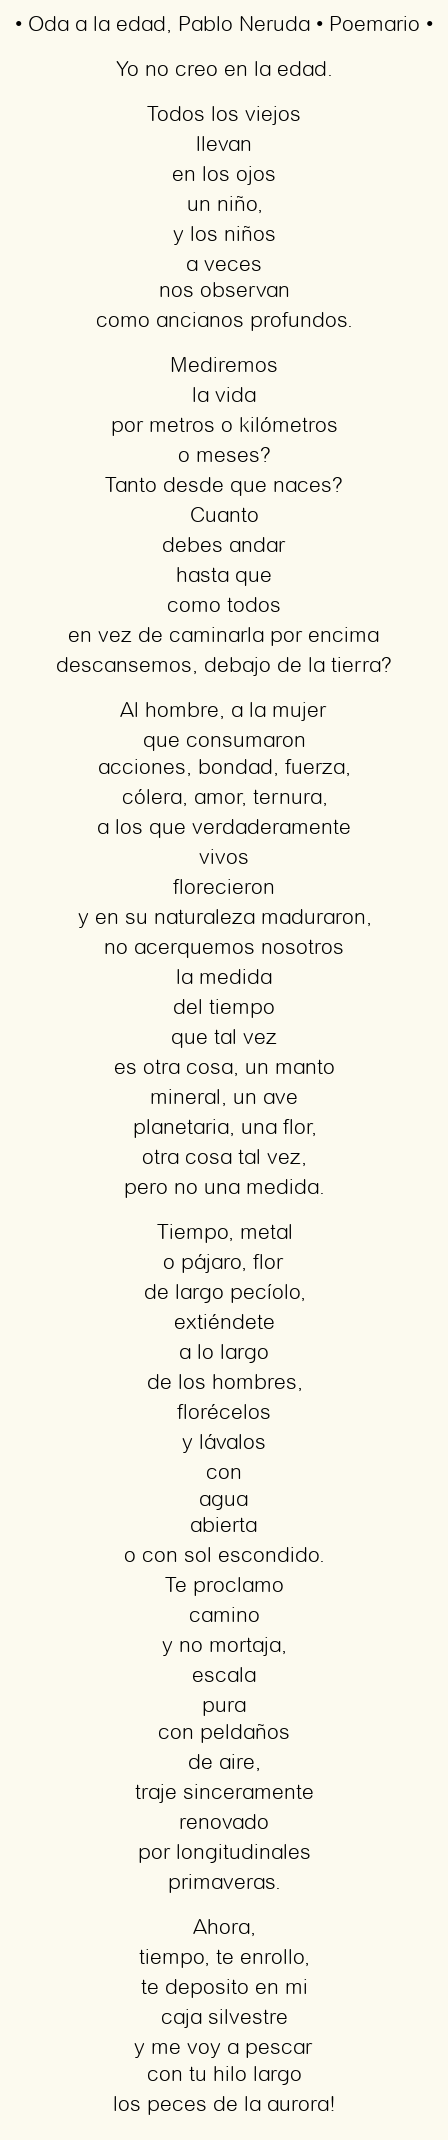 Imagen con el poema Oda a la edad, por Pablo Neruda